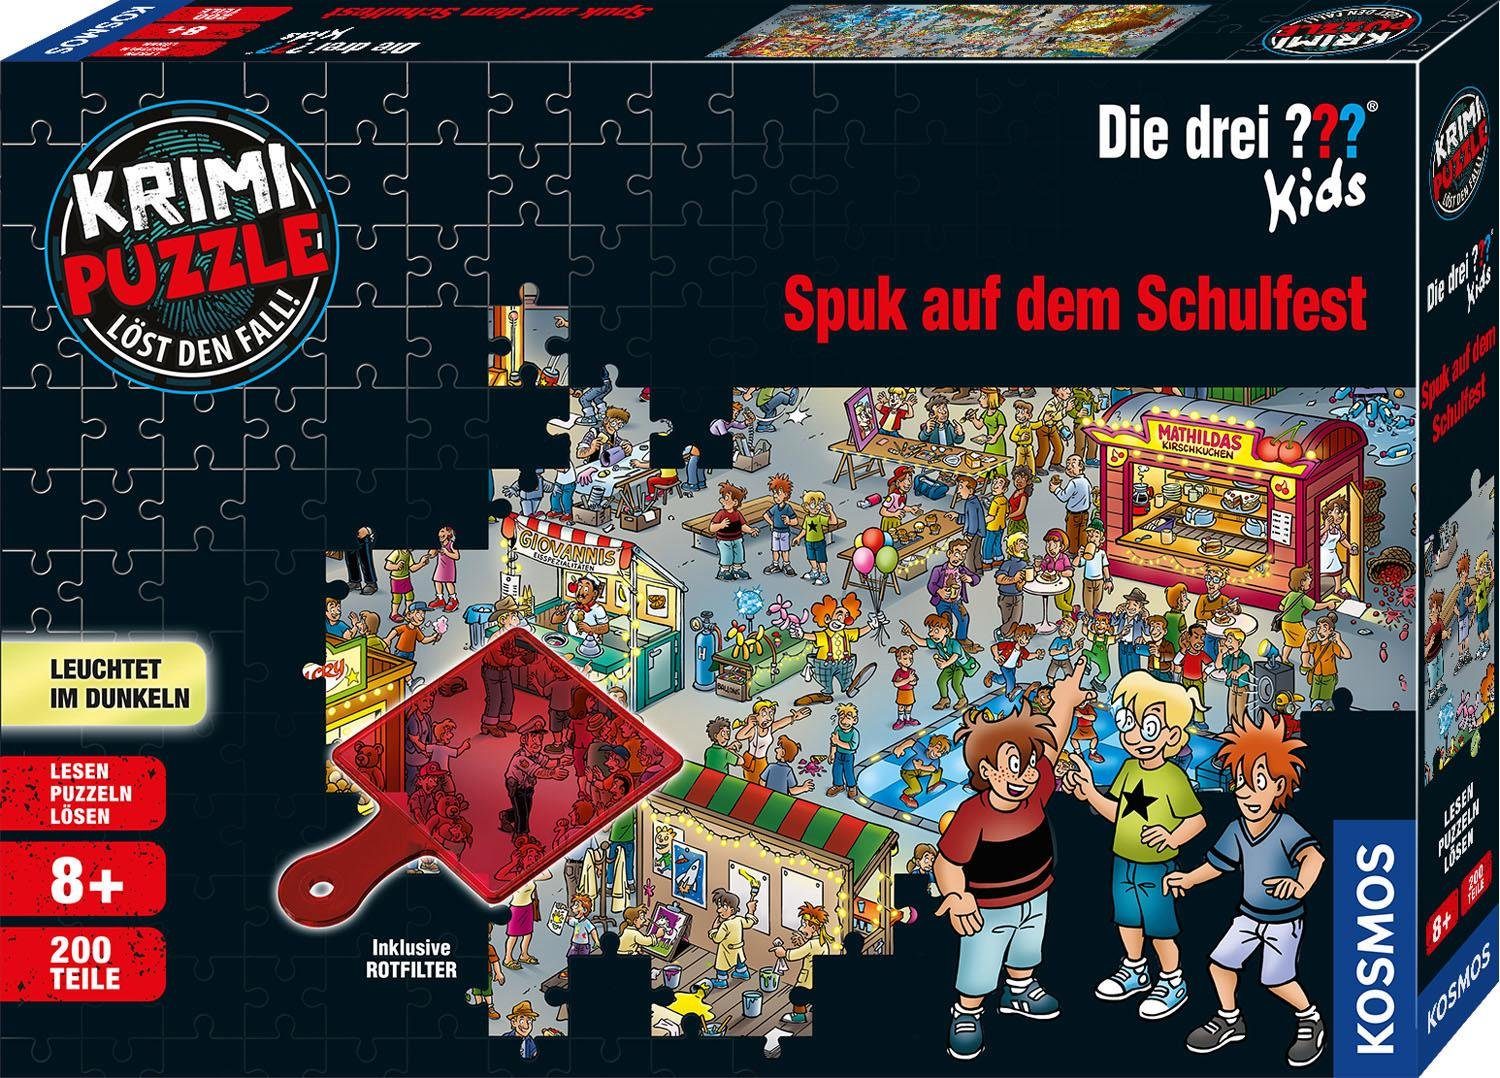 Kosmos Puzzle Krimipuzzle Die drei ??? Kids 200 Teile / Spuk auf dem Schulfest, 200 Puzzleteile, leuchtet im Dunkeln, Made in Germany | Puzzle